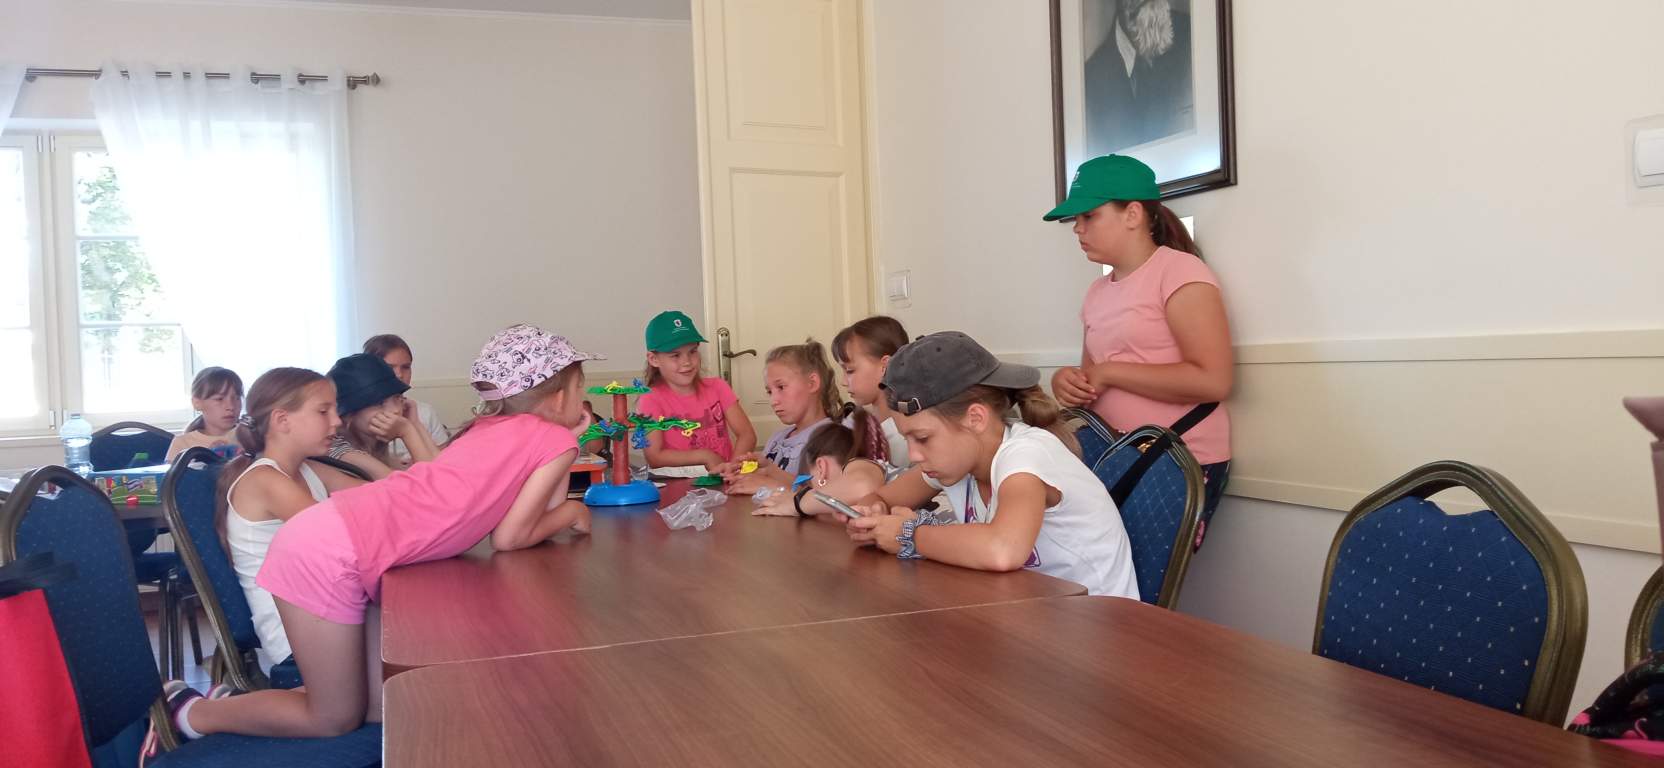 Fotografia przedstawia uczestników zajęć grających w gry planszowe przy stołach wewnątrz biblioteki